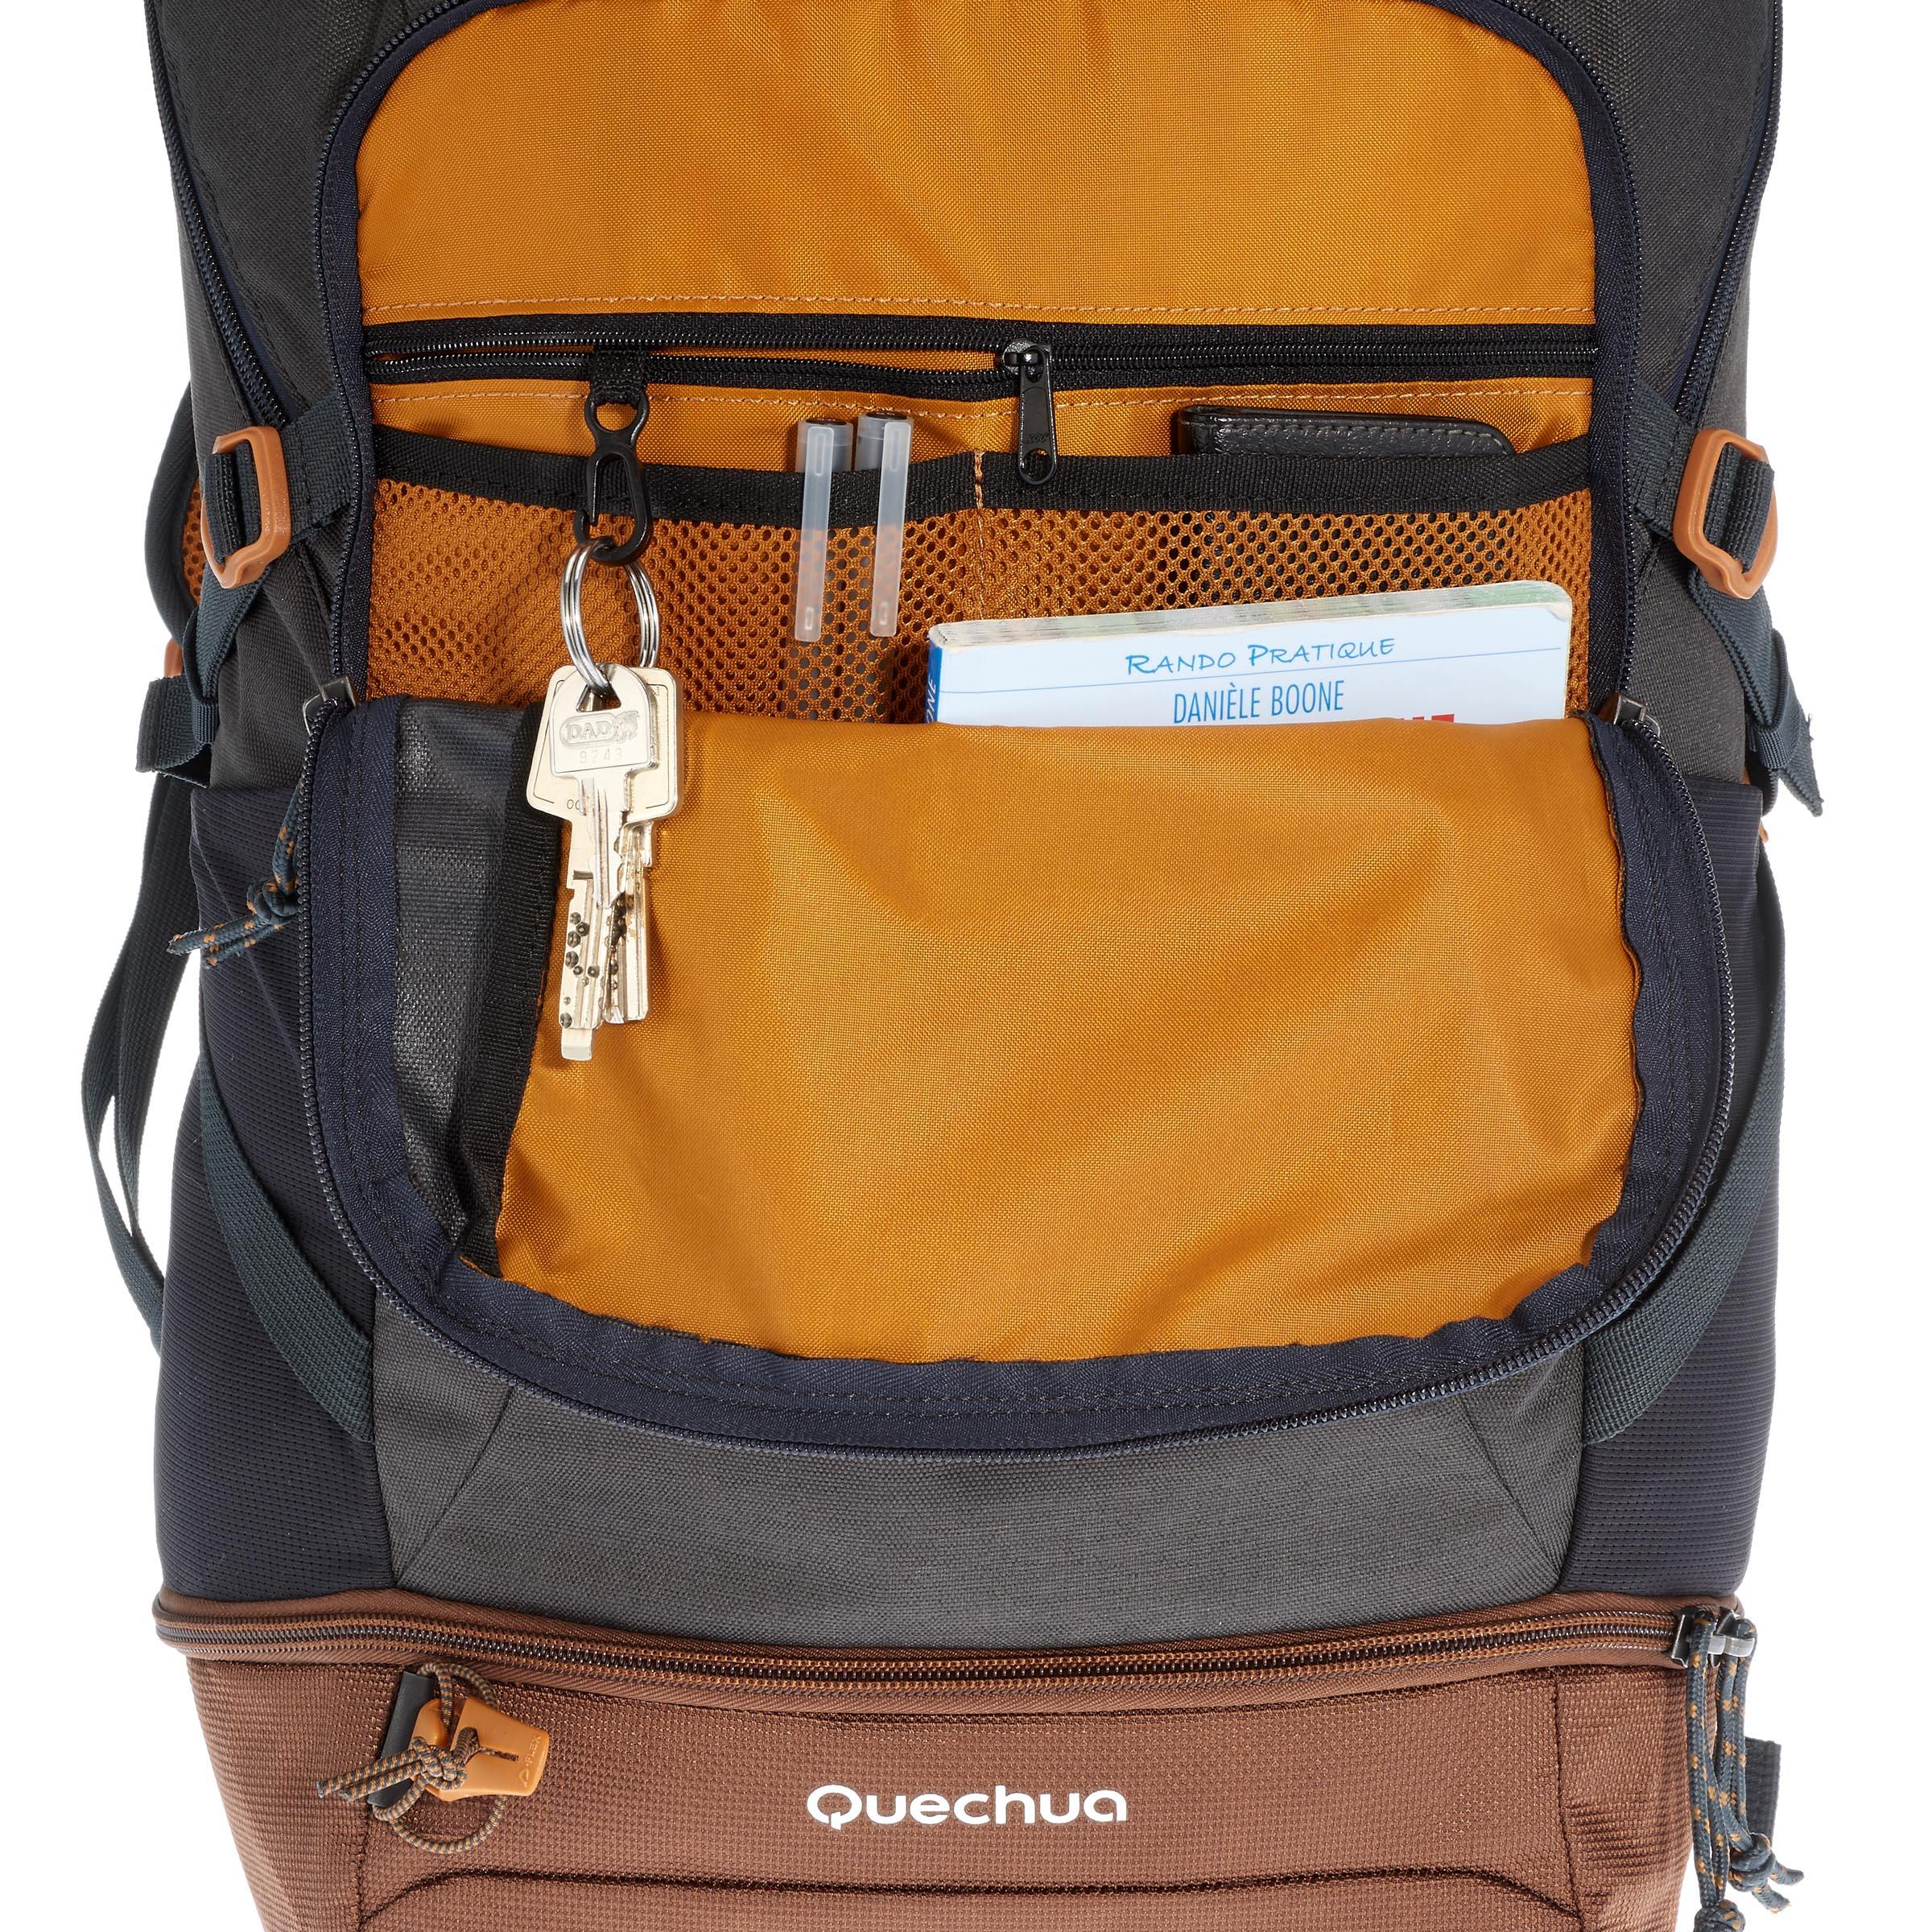 backpack nh500